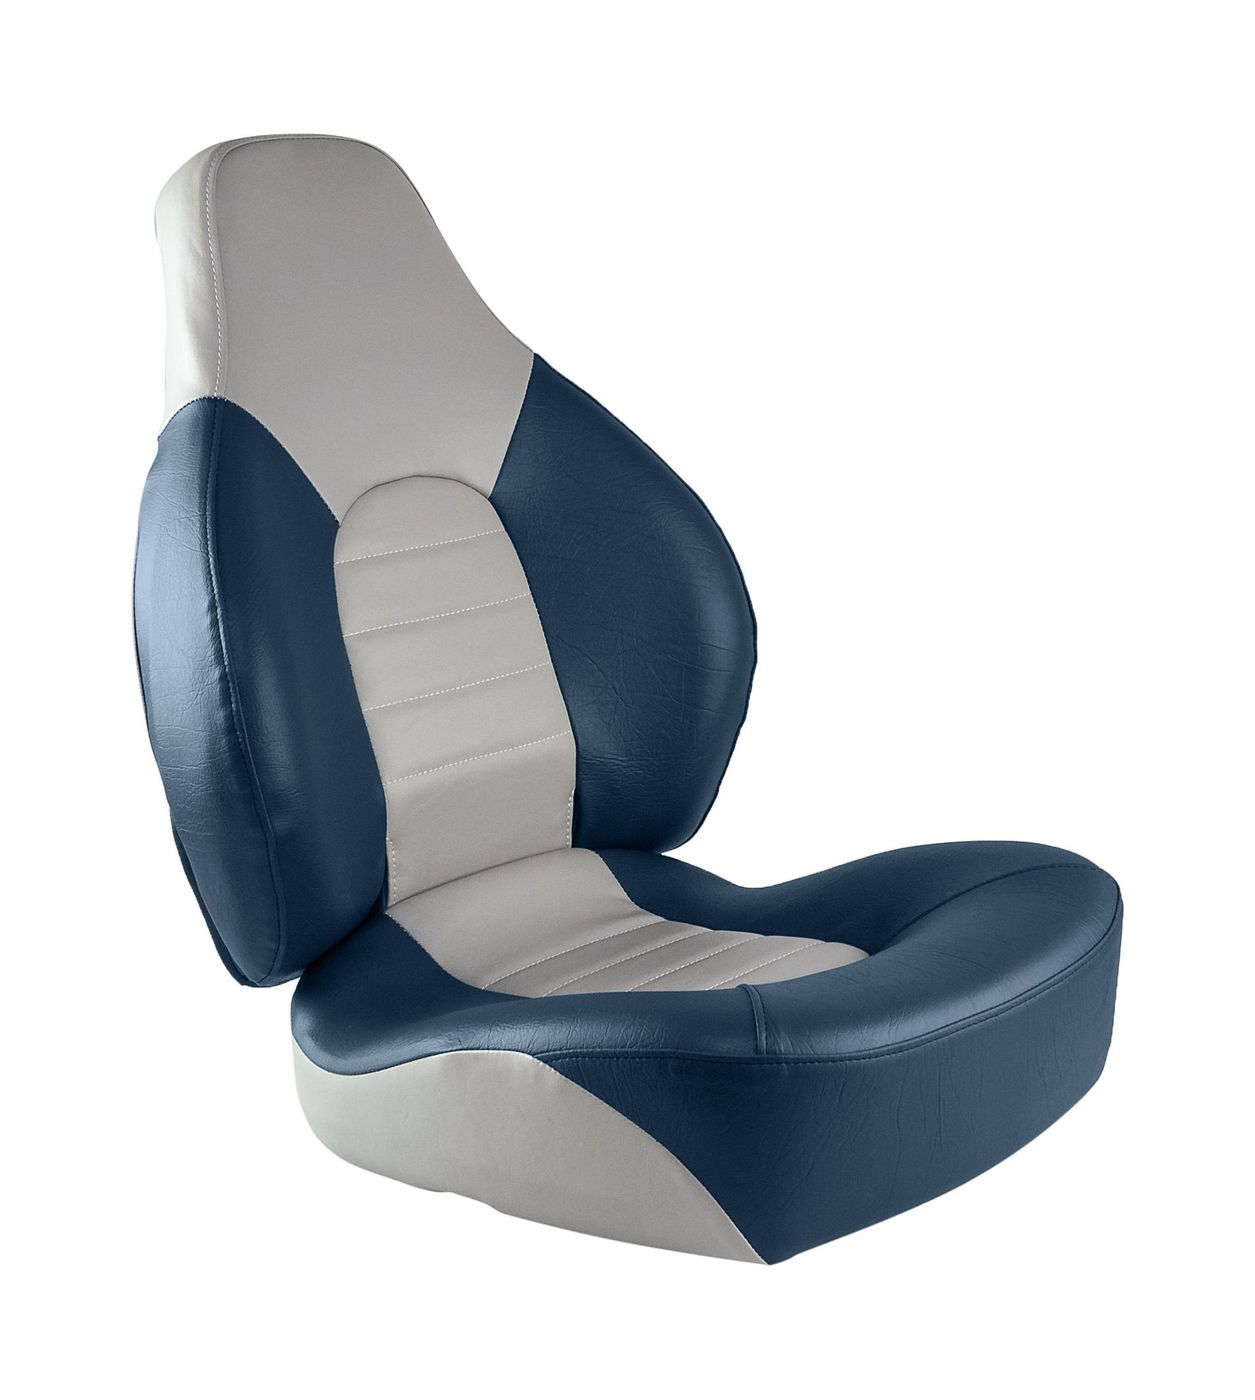 Кресло складное мягкое FISH PRO, цвет серый/синий 1041631 кресло шезлонг складное со съемным матрасом и декоративной подушкой подножка haushalt hhk7 bl синий